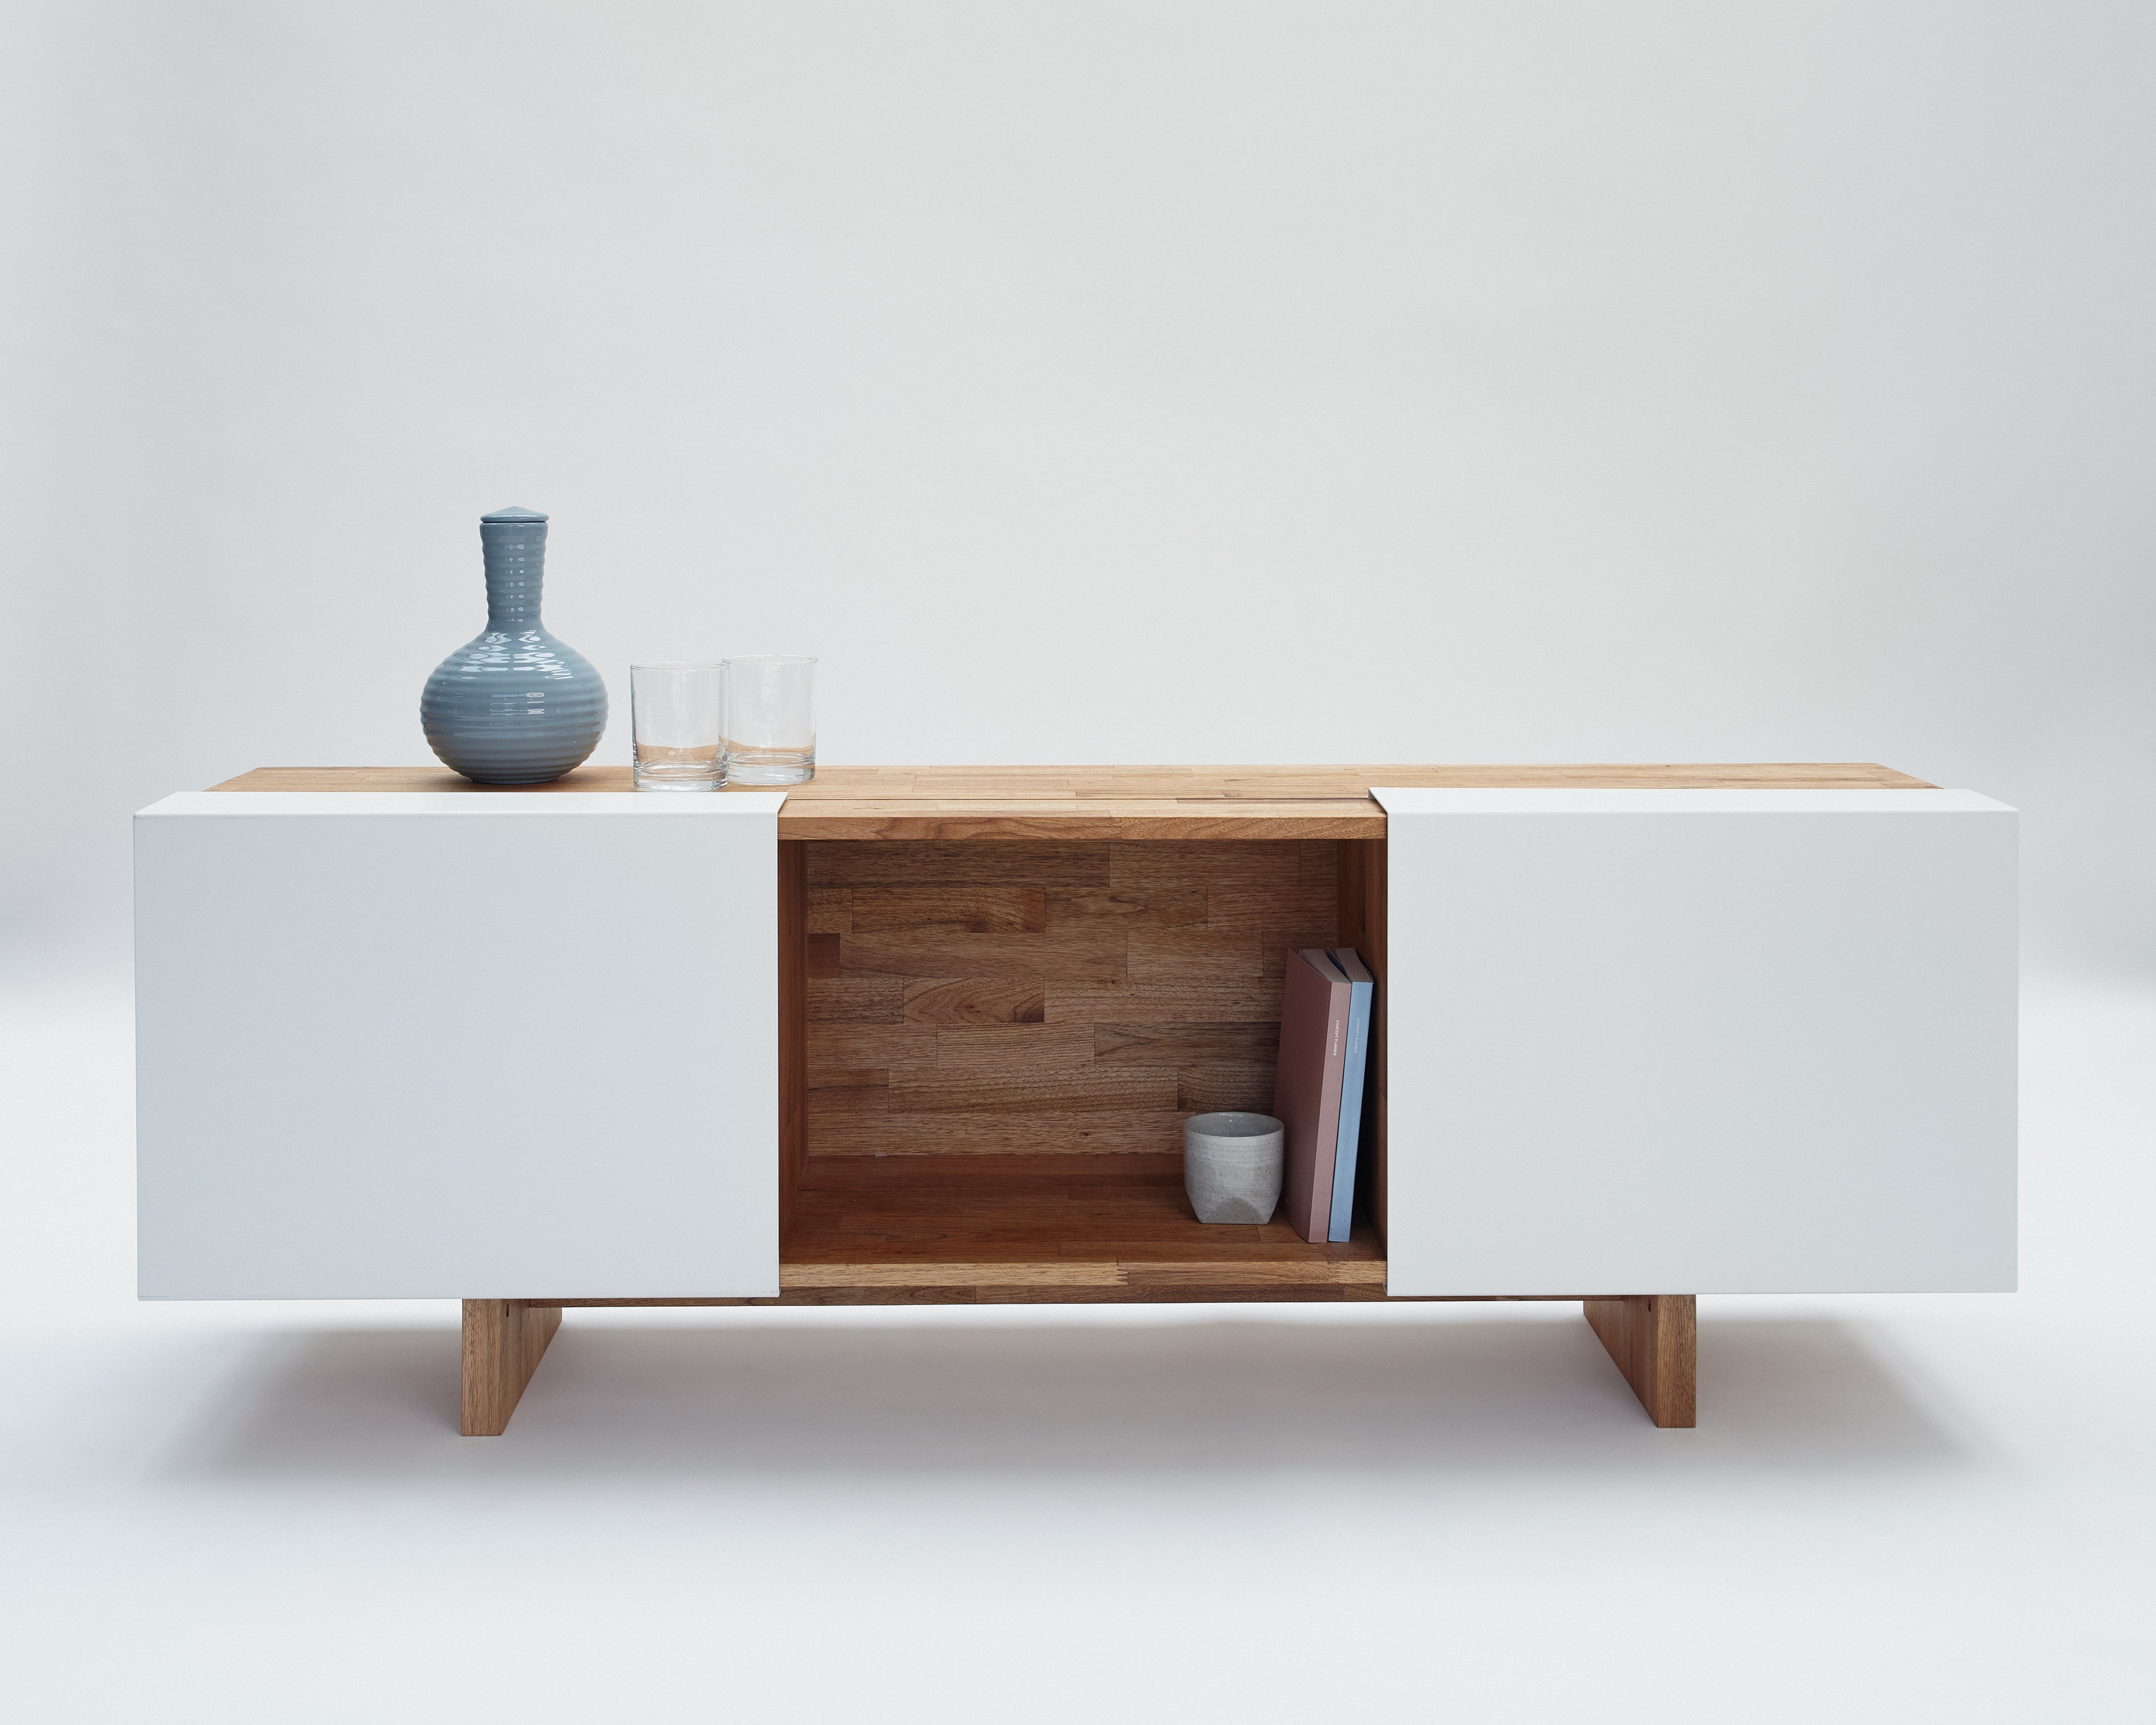 3X Shelf with Base- English Walnut, Gloss White Panels